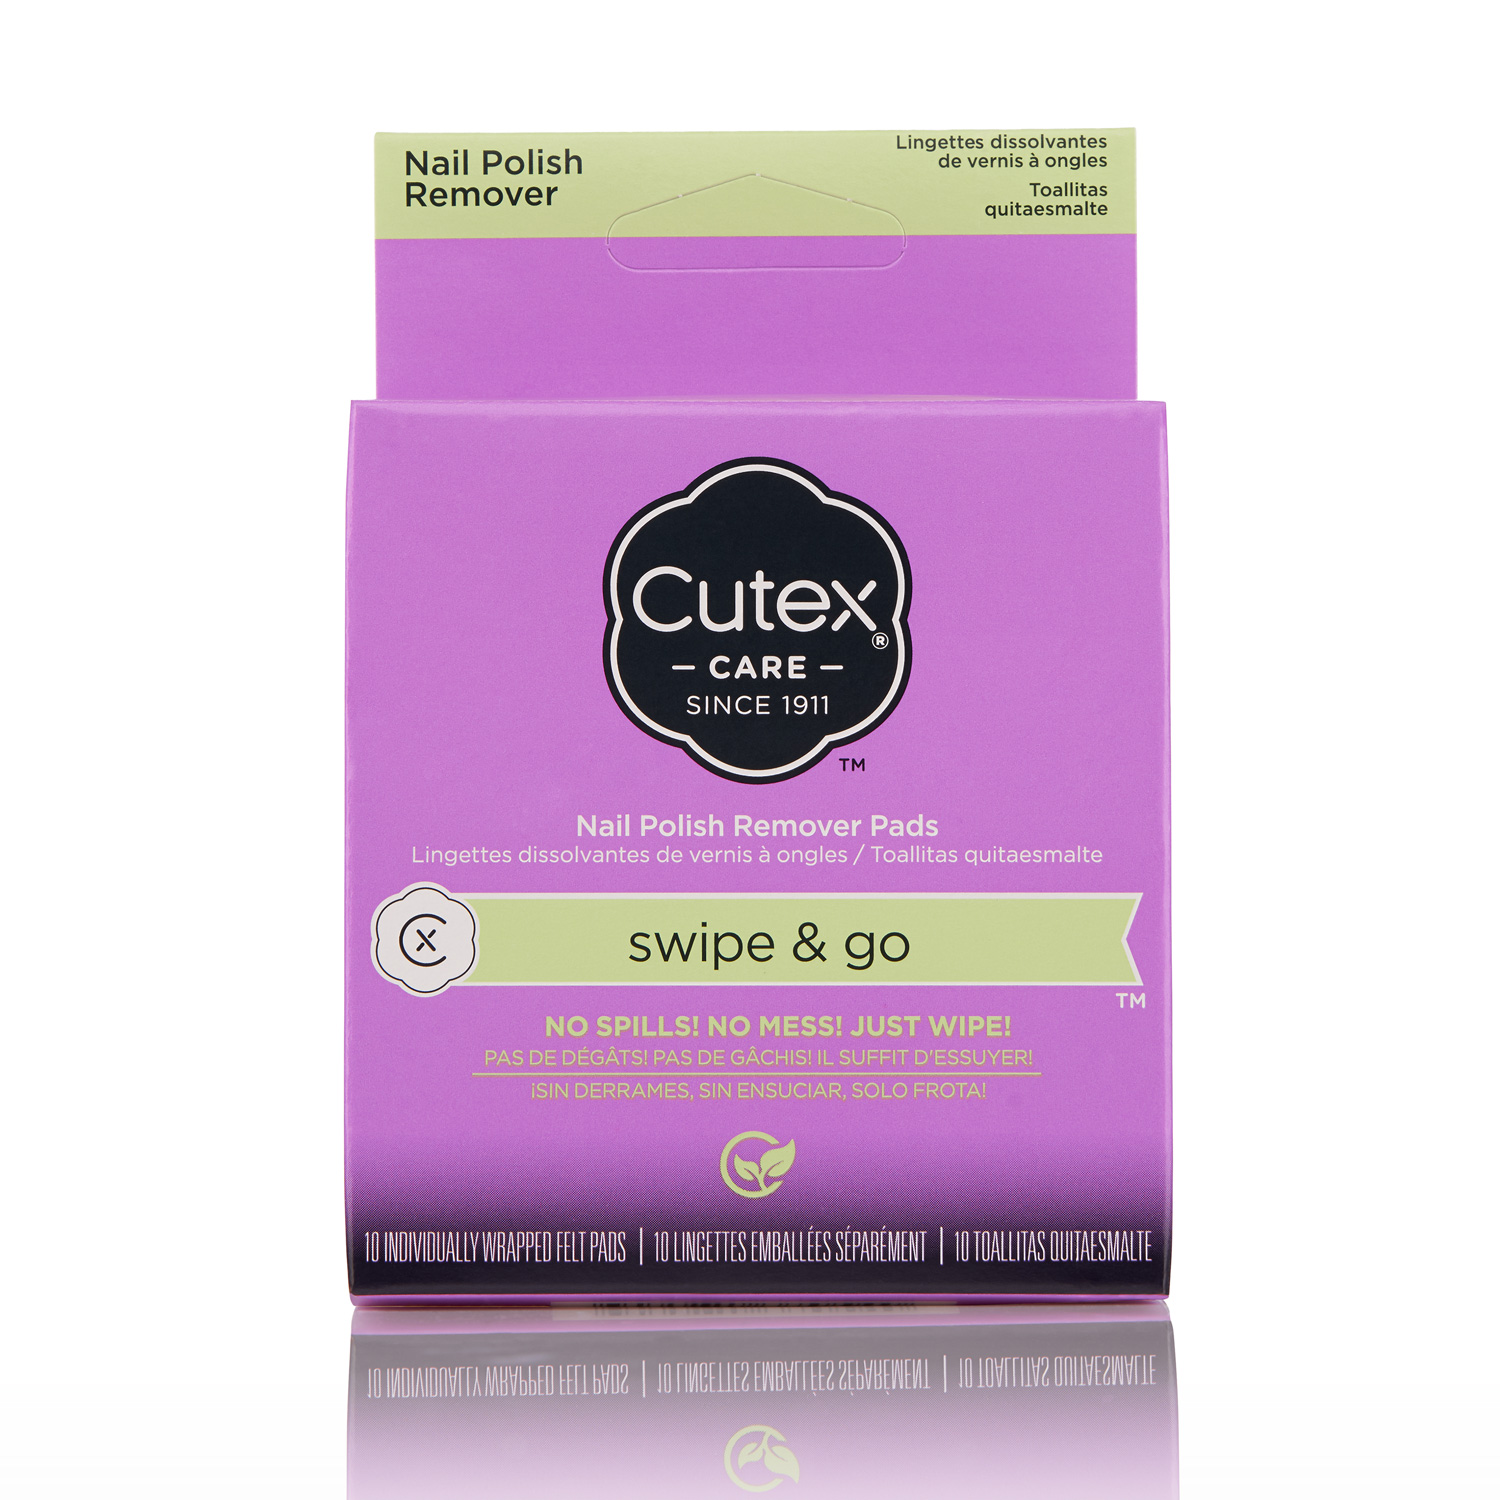 Cutex Nourishing Nail Polish Remover - Reviews | MakeupAlley